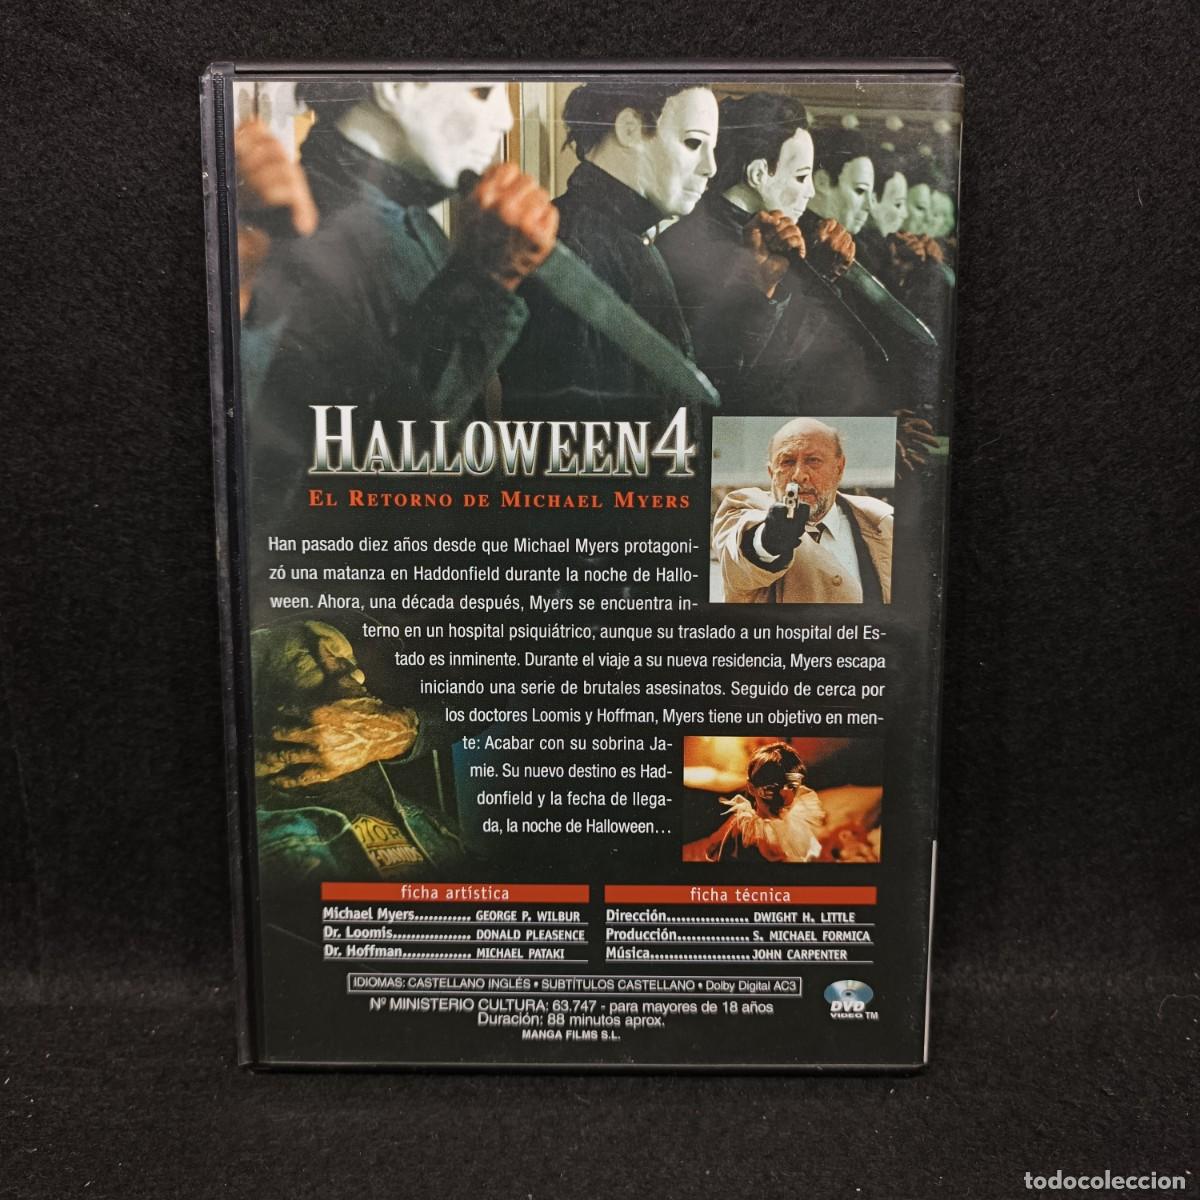 halloween 4 - el retorno de michael myers - dvd - Acheter Films de cinéma  DVD sur todocoleccion